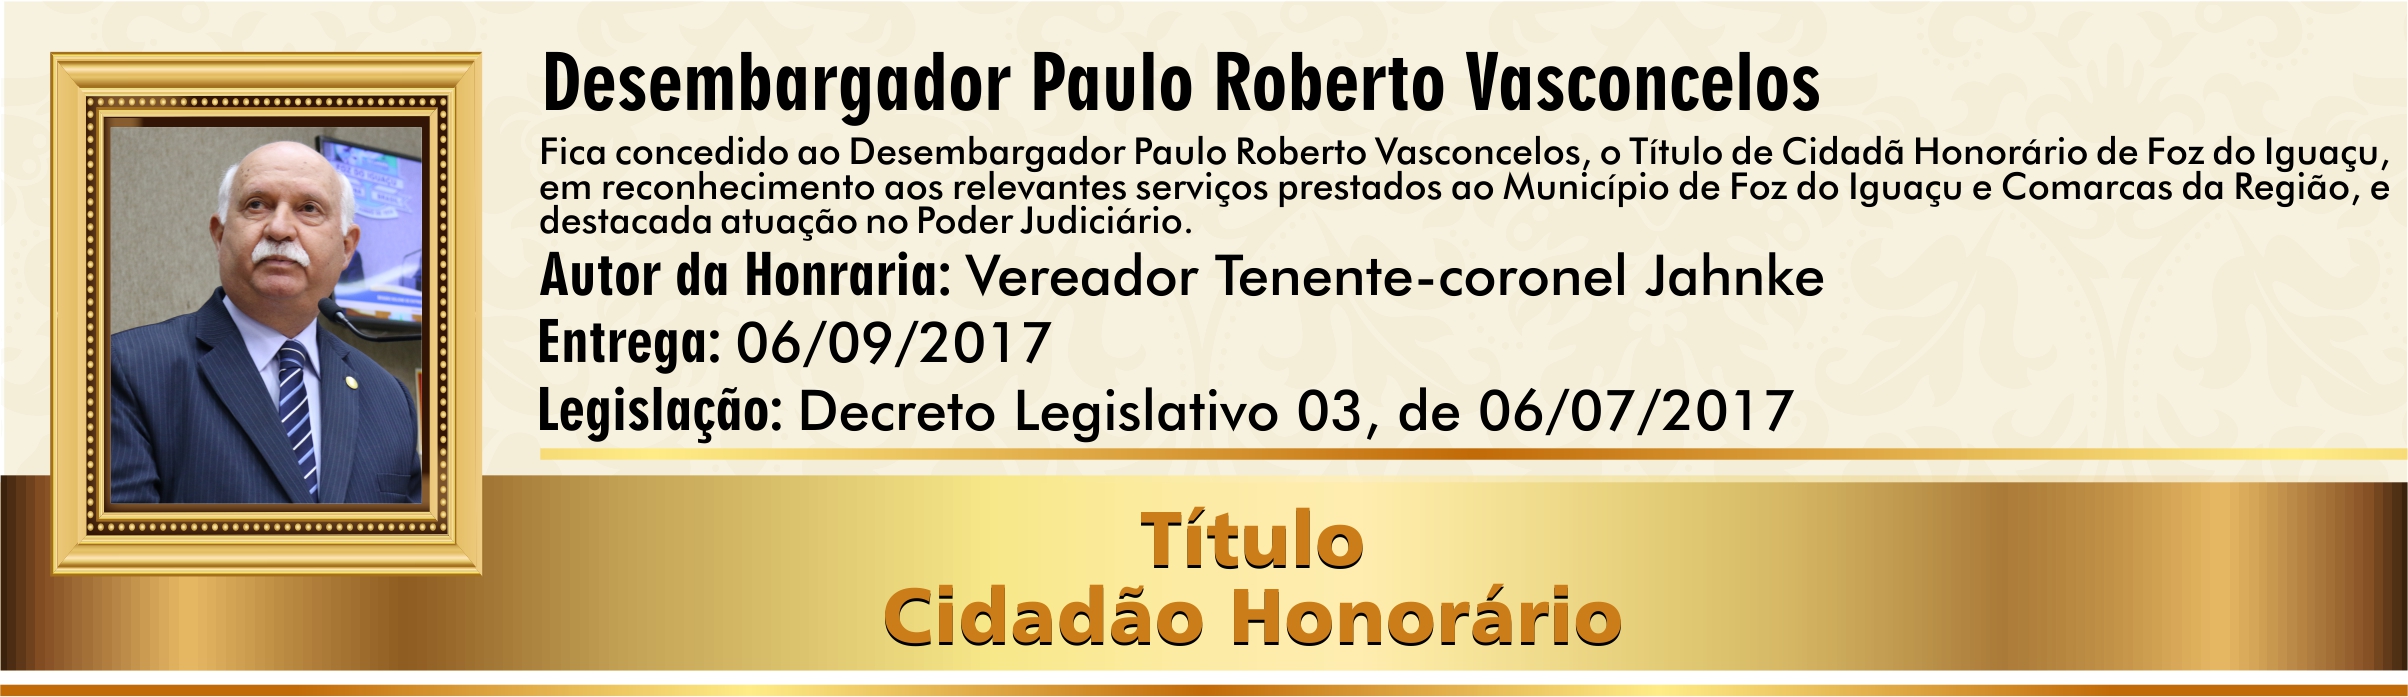 Desembargador Paulo Roberto Vasconcelos